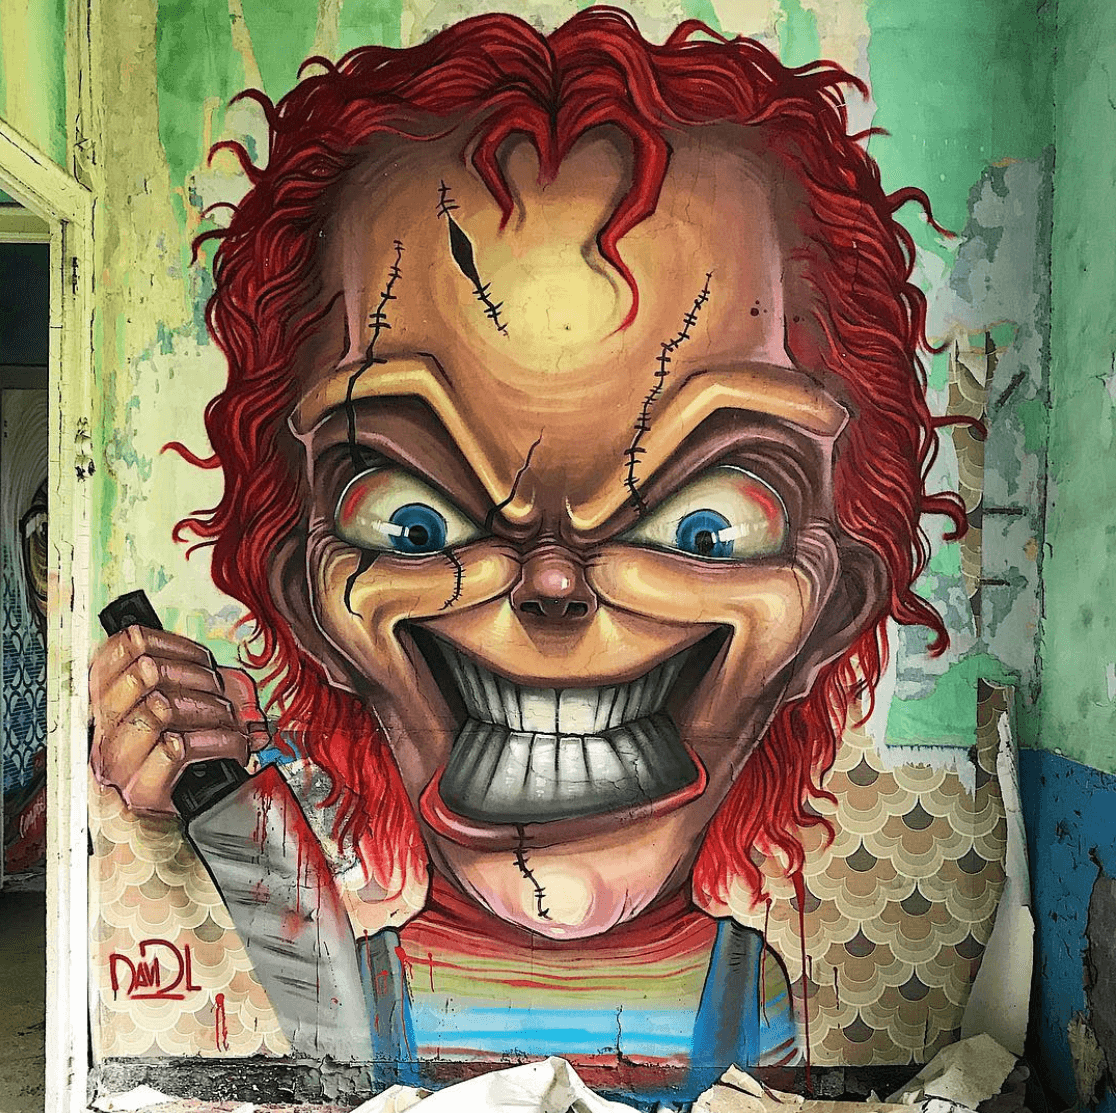 David Lozano Chucky Childs Play Horror Movie Graffiti